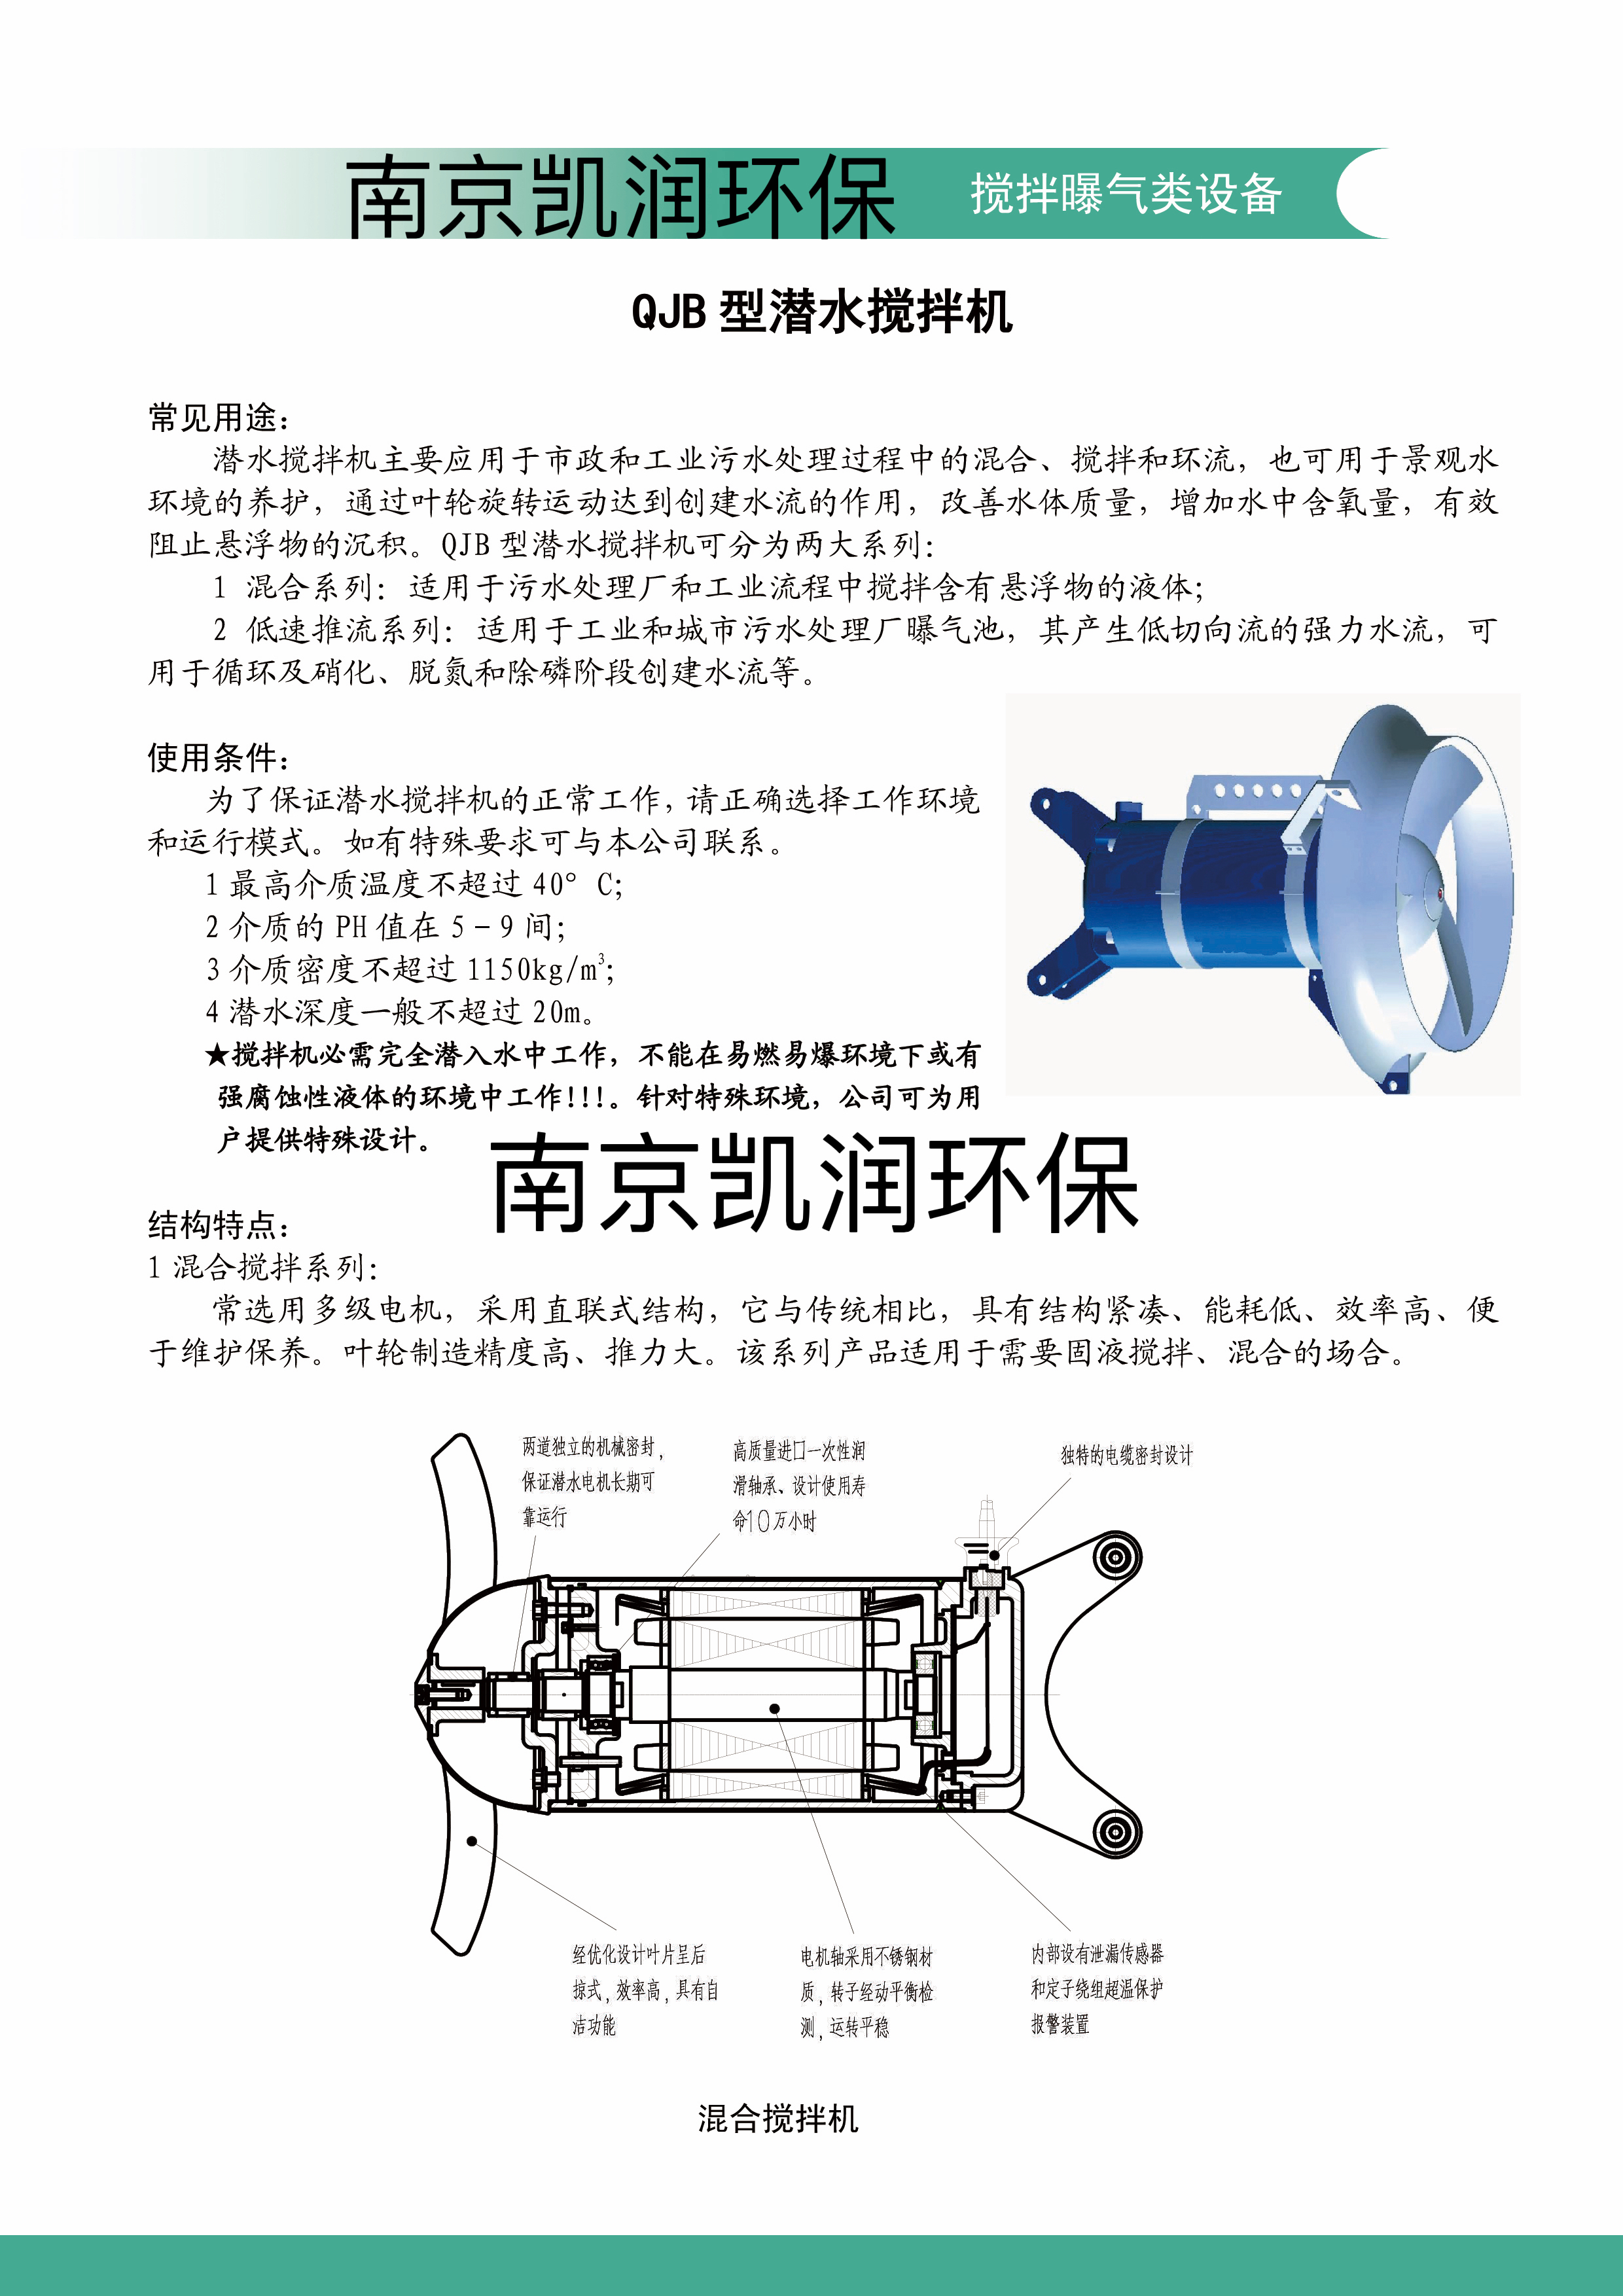 南京凯润环保不锈钢冲压式1.5/6 QJB潜水搅拌机用于市政和工业污水 厂家制造